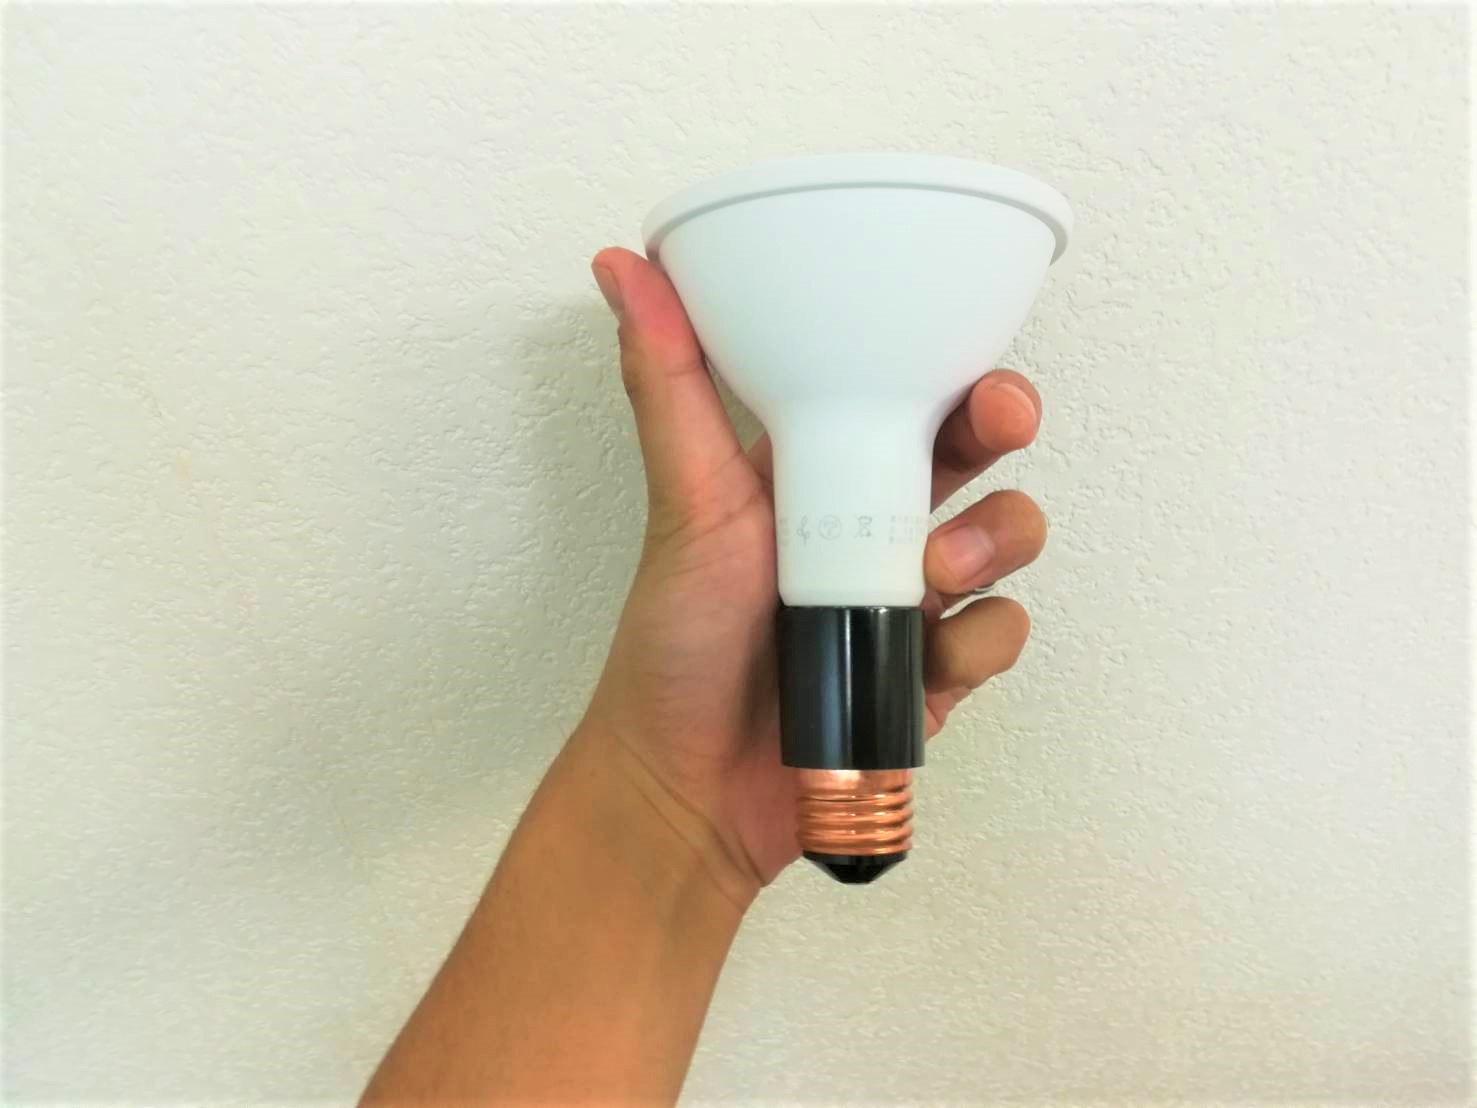 YAZAWAクリップライトにIKEA植物専用LEDを付ける方法。≪ソケットアダプター≫